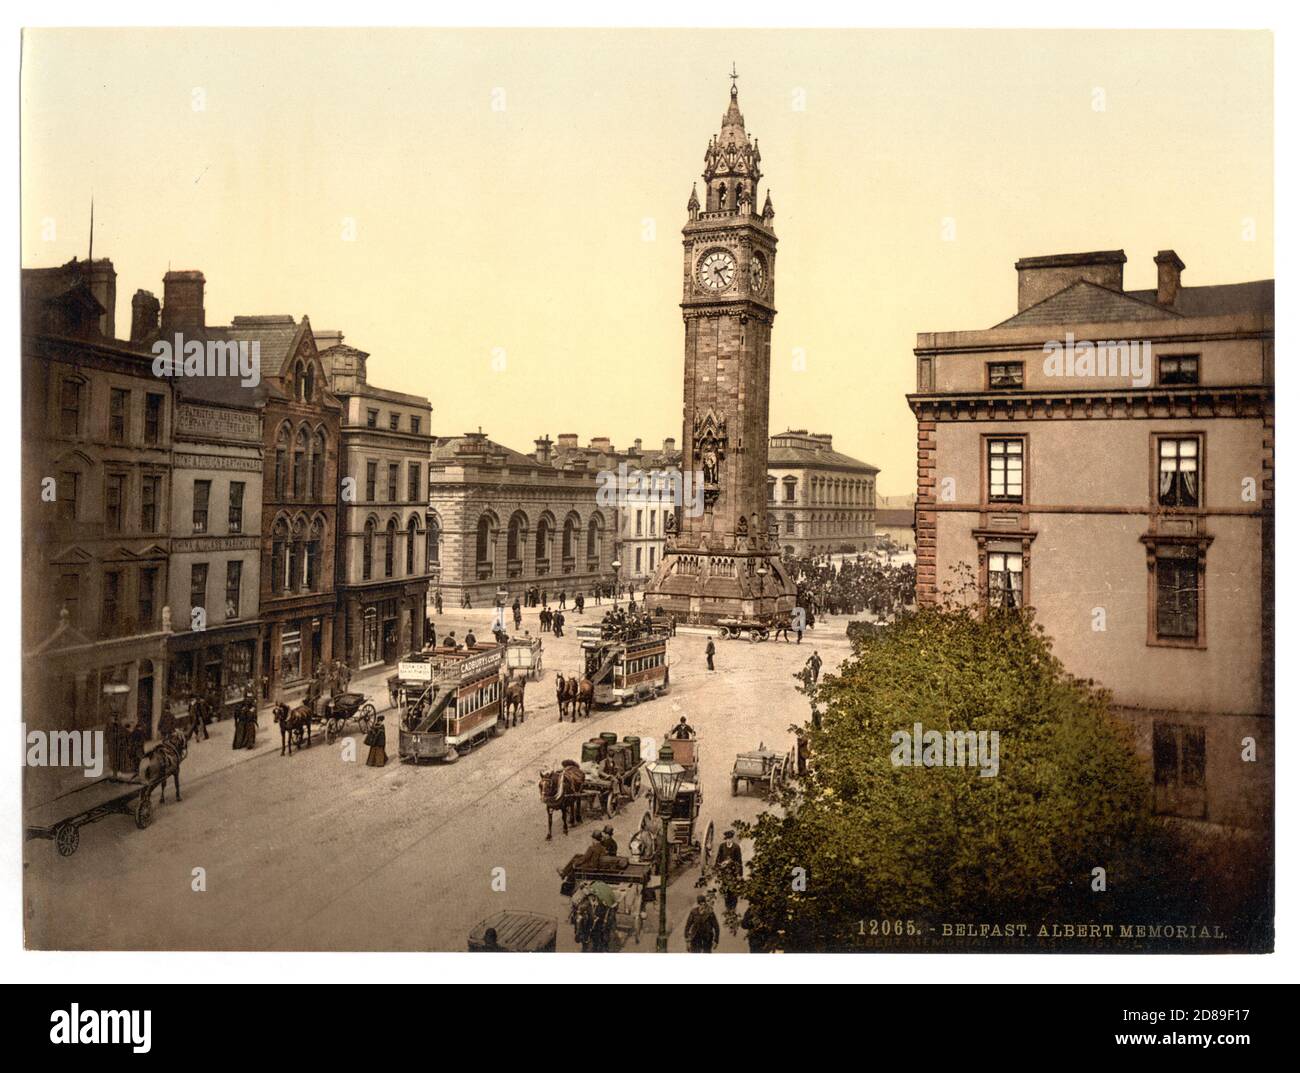 Belfast Albert Memorial 1890 Stock Photo